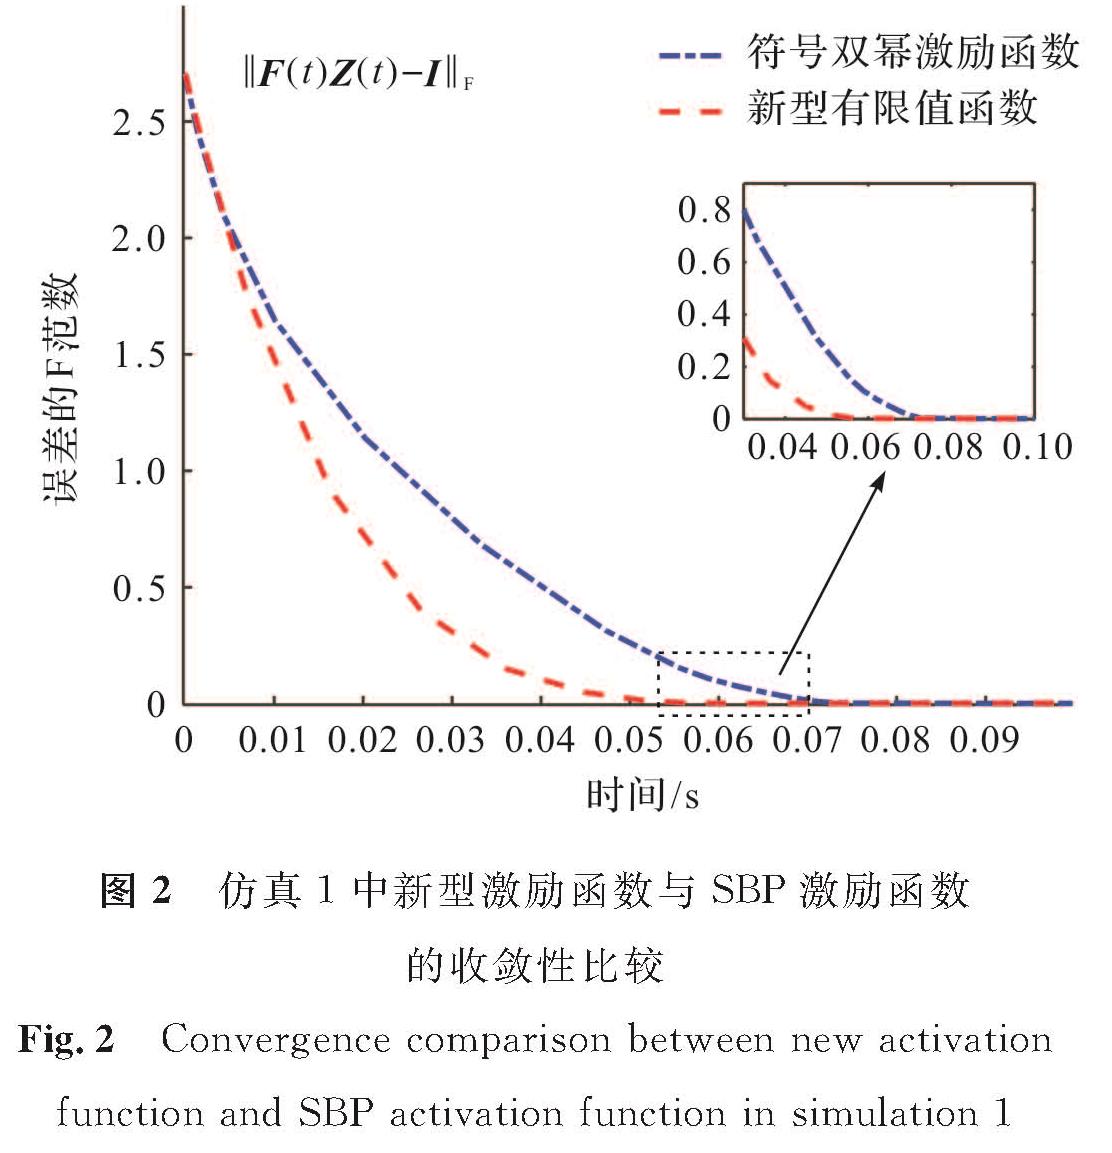 图2 仿真1中新型激励函数与SBP激励函数的收敛性比较<br/>Fig.2 Convergence comparison between new activation function and SBP activation function in simulation 1